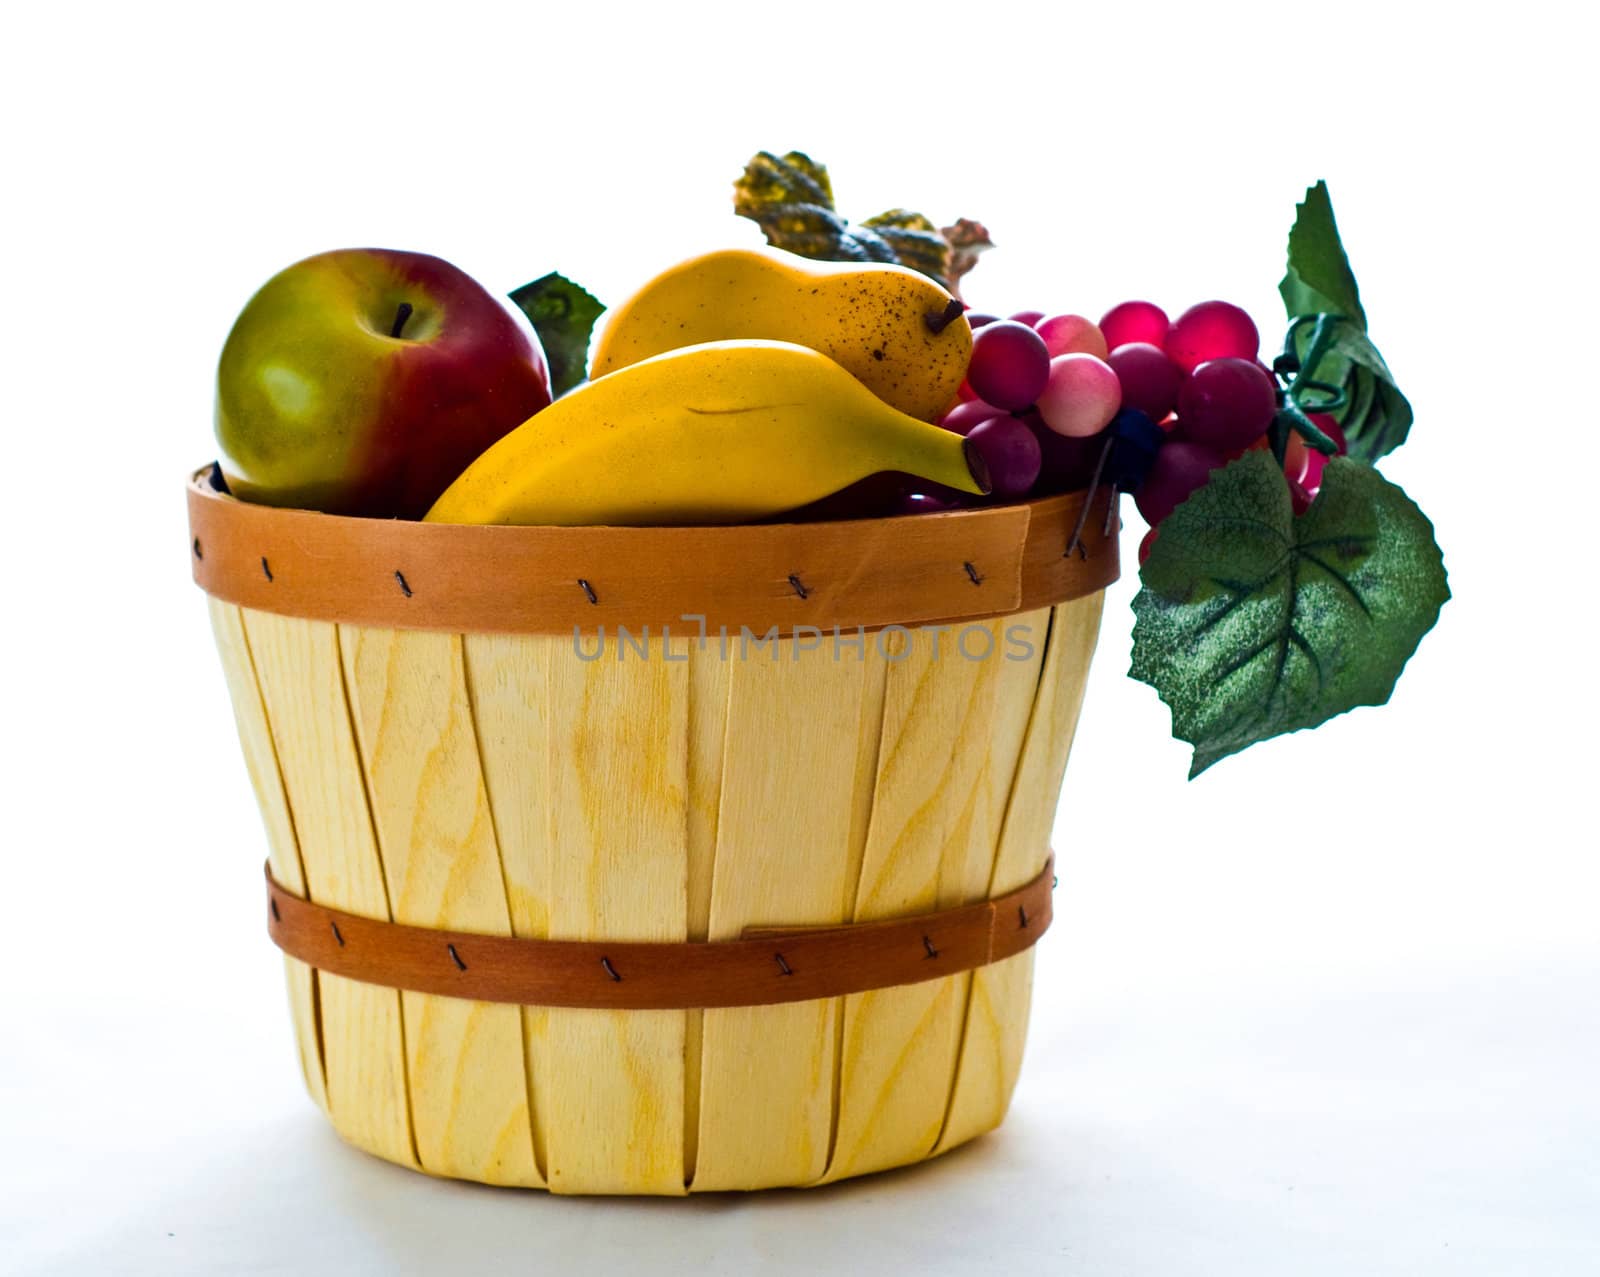 Fruit basket still life by rcarner